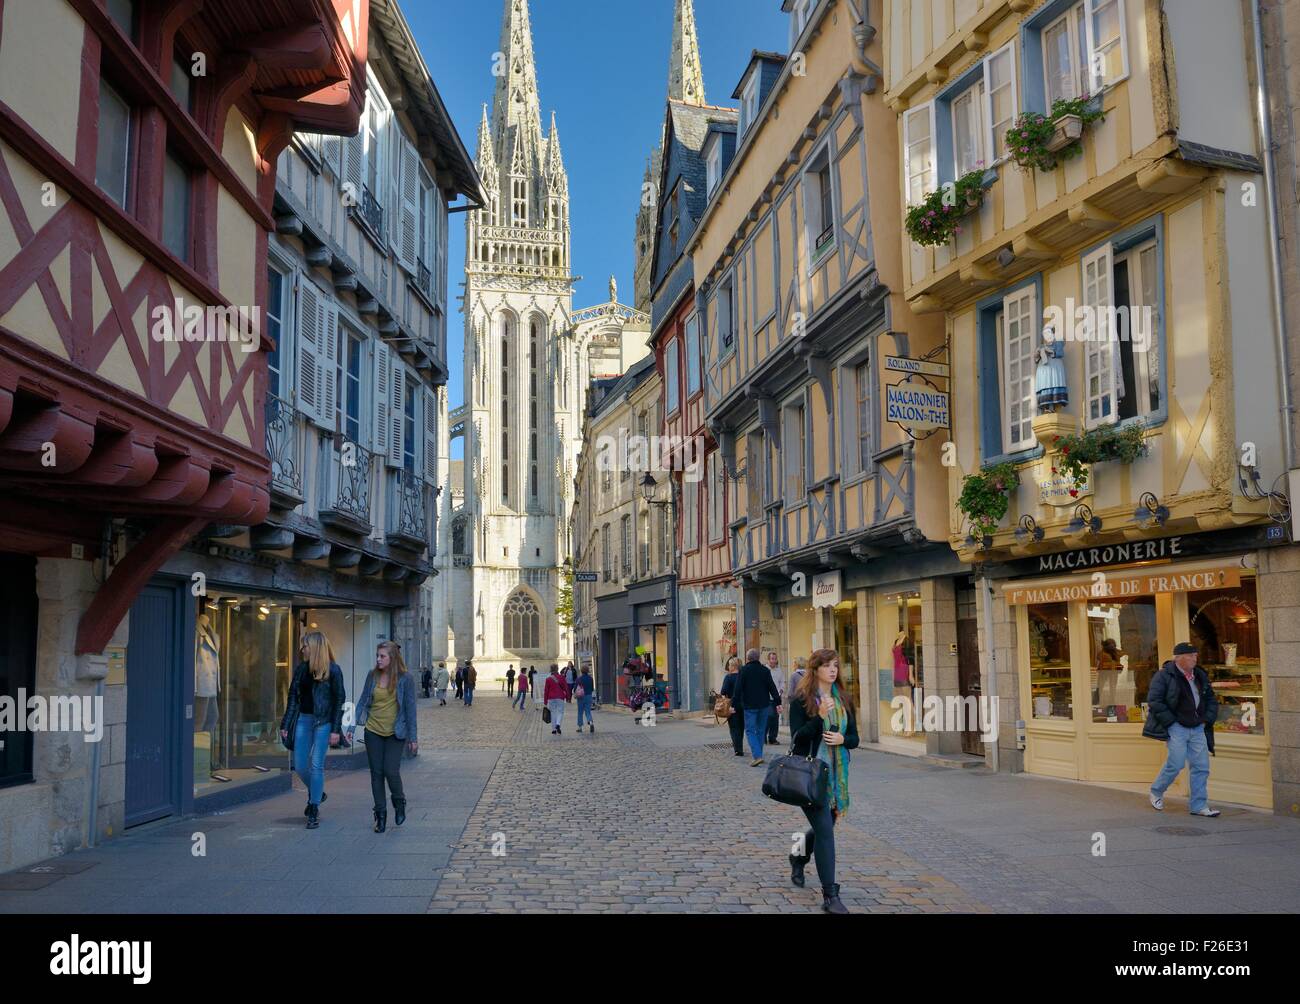 Cathédrale Saint Corentin vu au-delà des boutiques sur Rue Kereon dans le centre-ville médiéval de Quimper, Finistère, Bretagne, France Banque D'Images